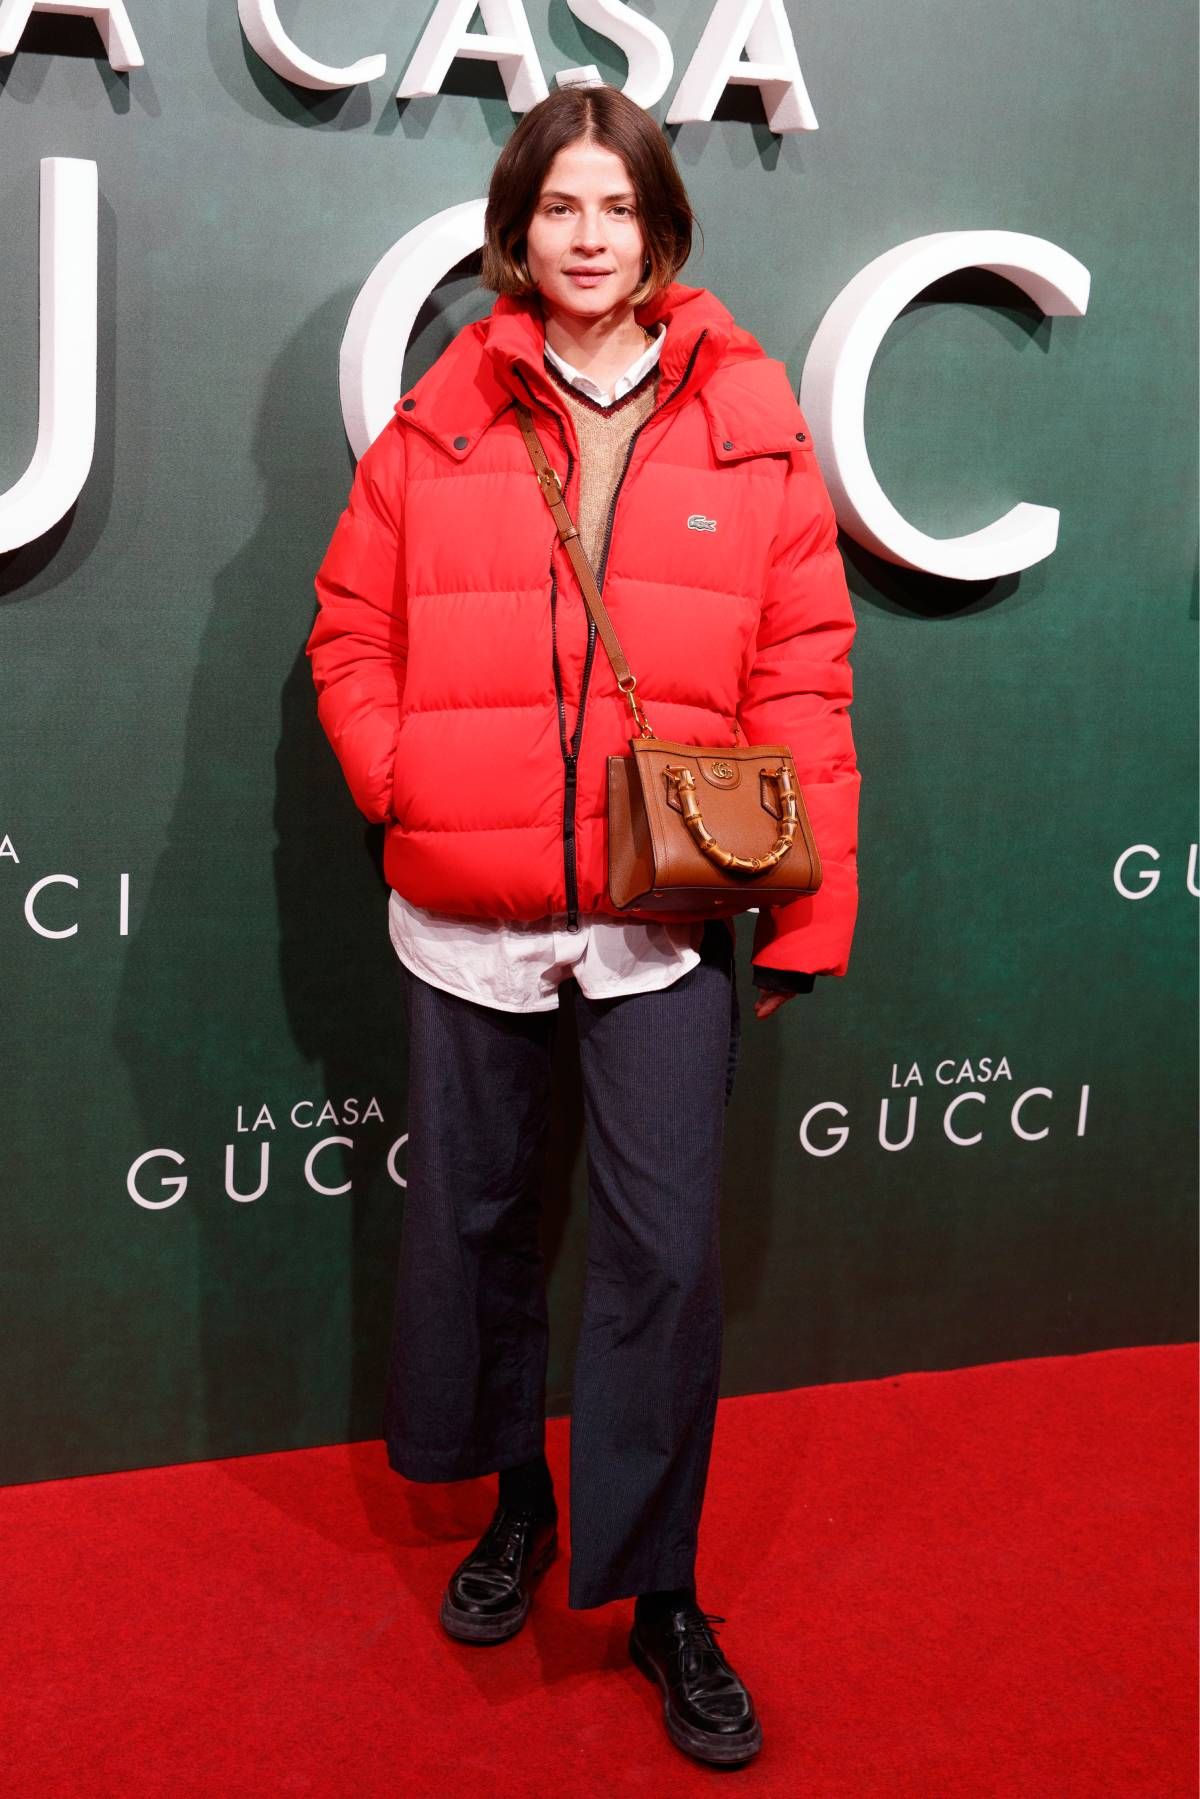 Alba Galocha en la premiére de 'La casa Gucci'